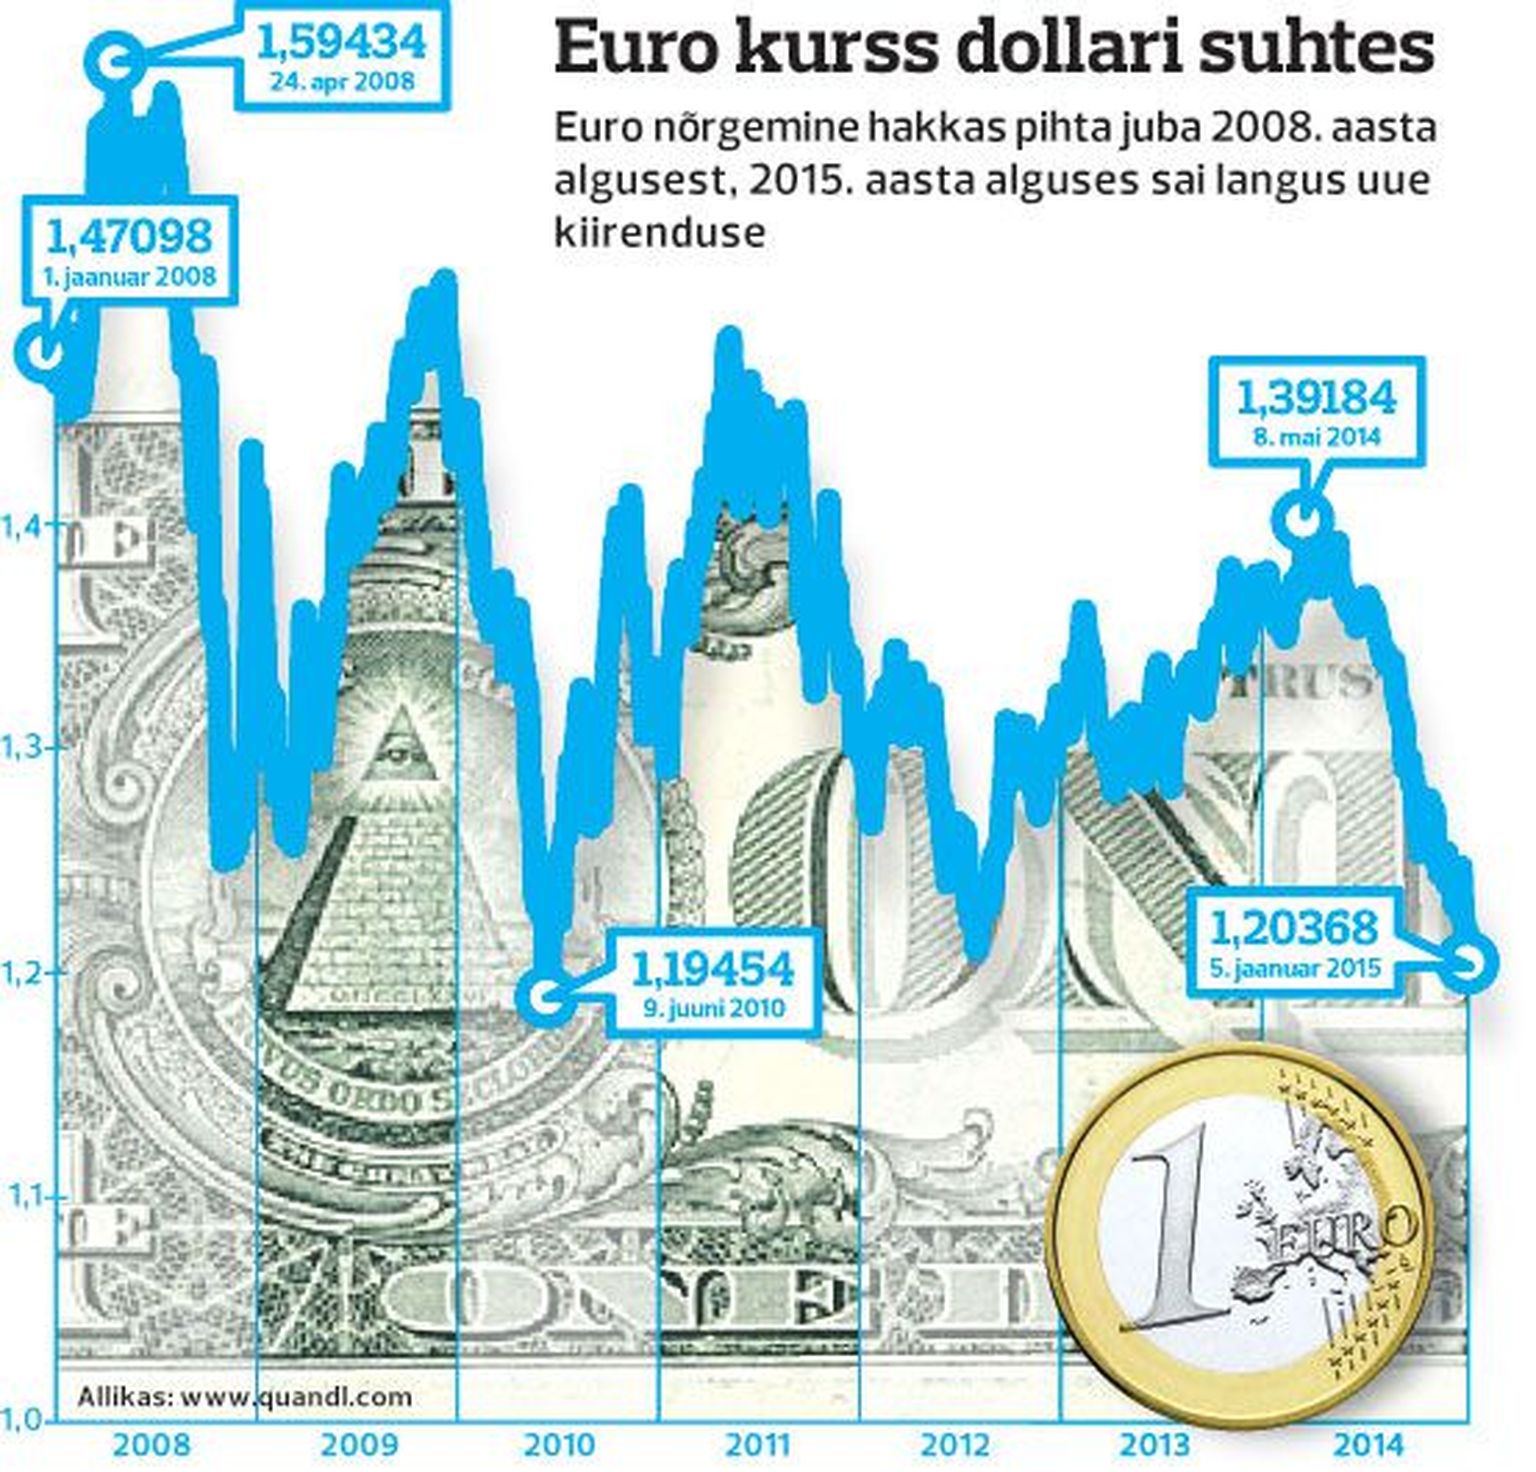 Euro kurss dollari suhtes.